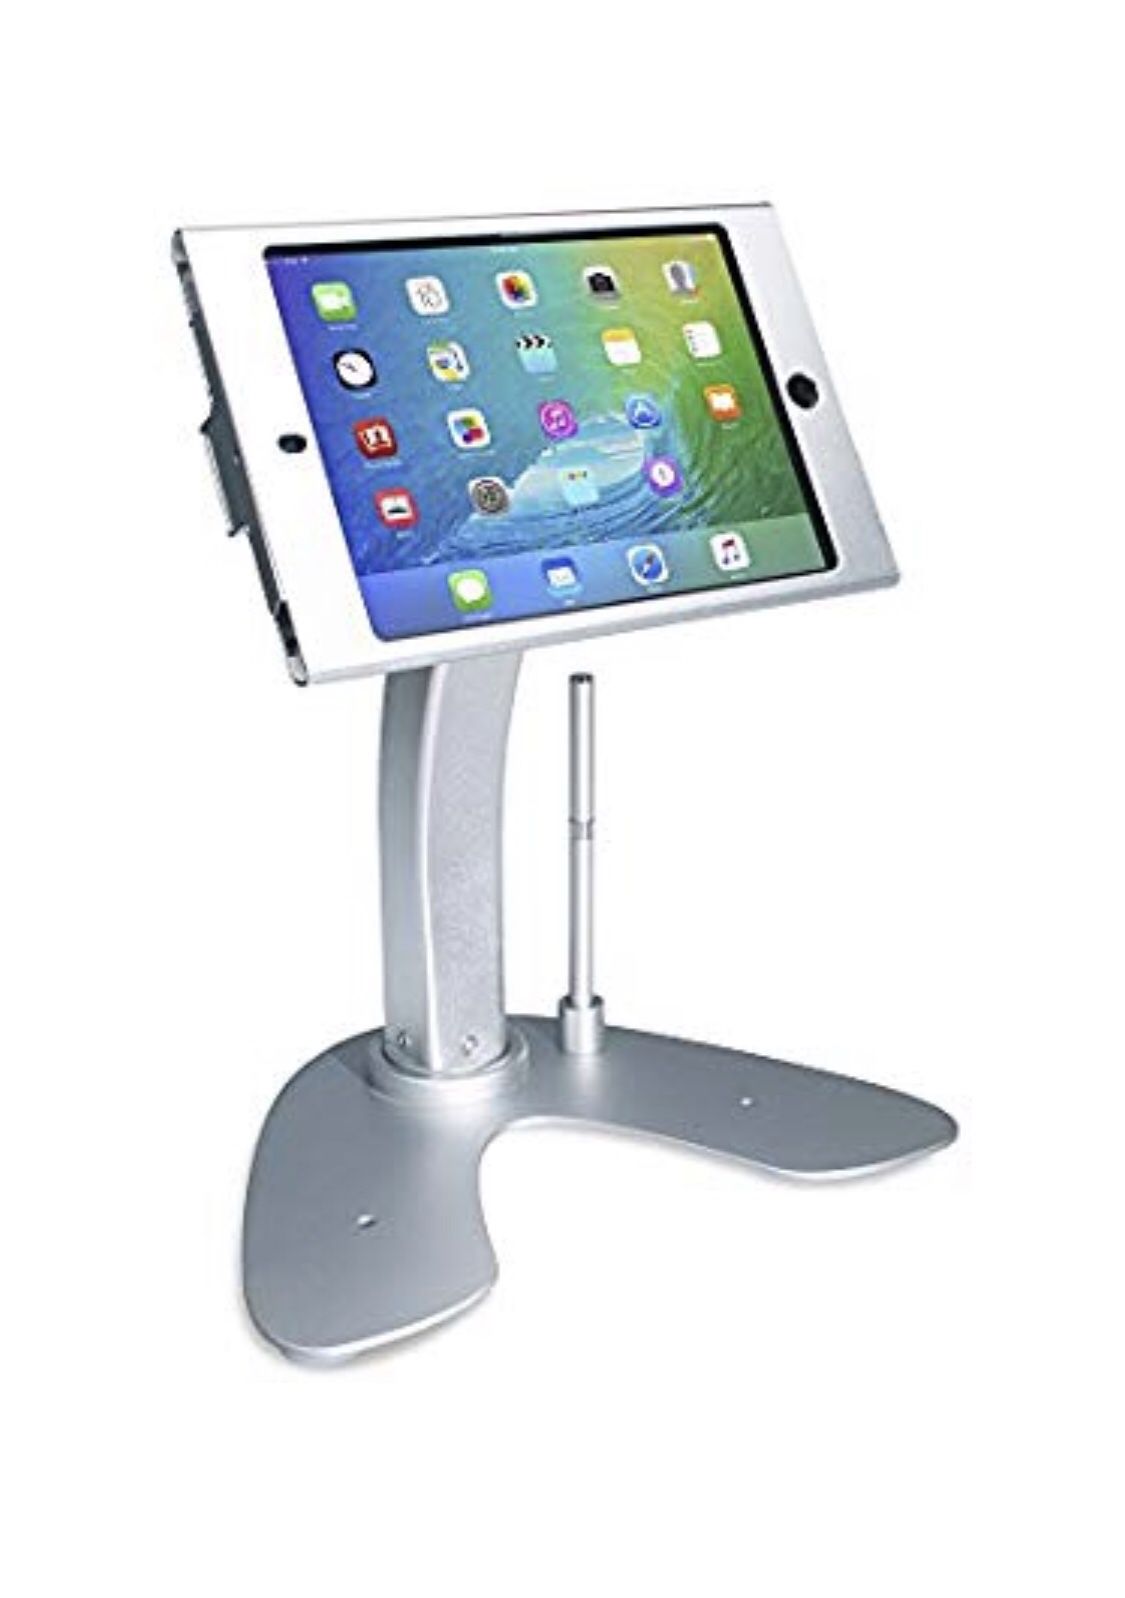 CTA Digital Anti-Theft Security Kiosk & POS Stand for iPad mini 1/2 / 3/4 (PAD-ASKM